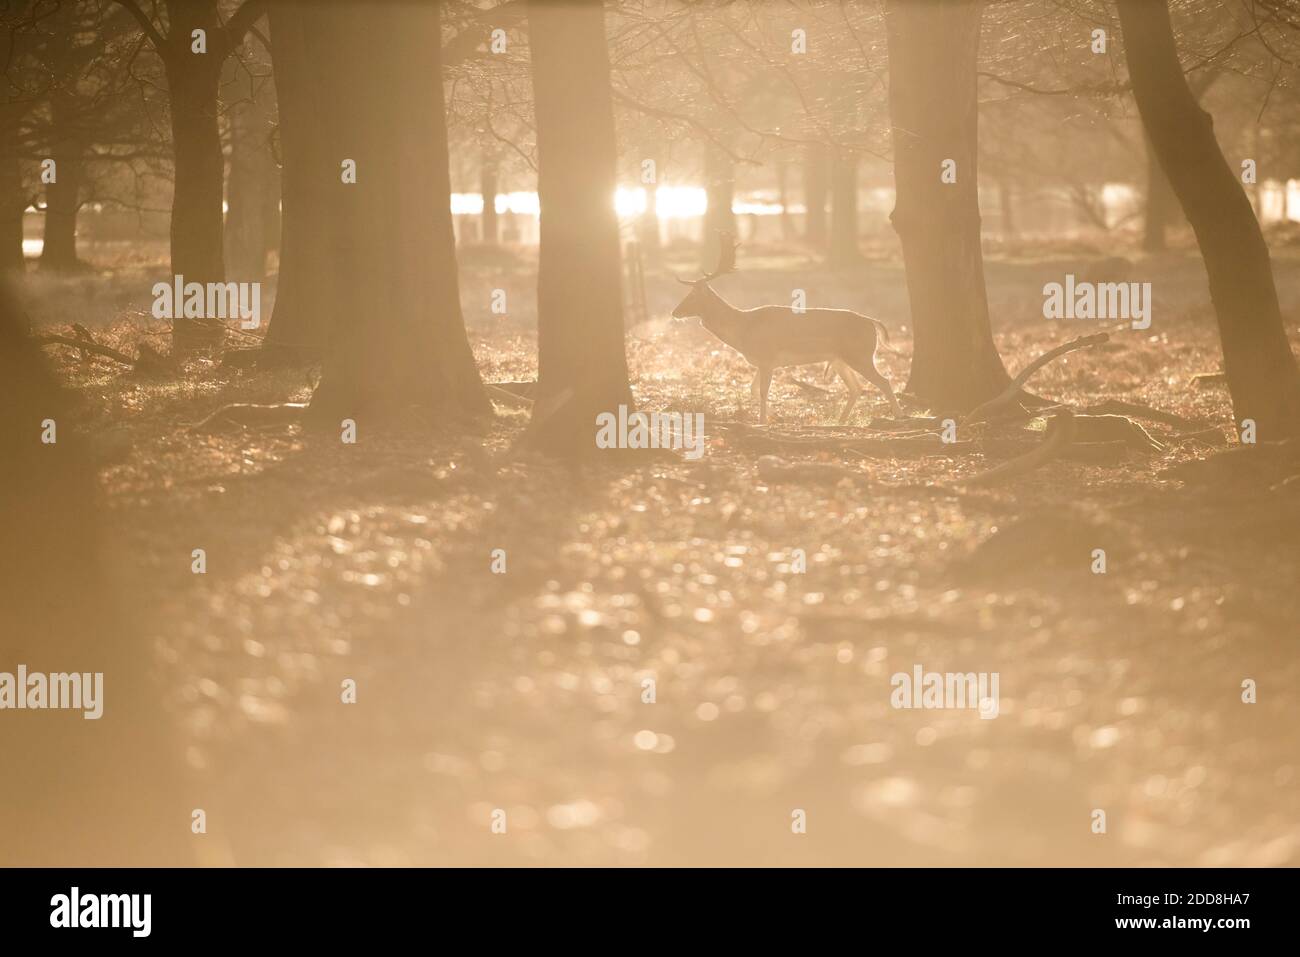 Scena faunistica britannica, di un bel cervo maledetto (dama dama) in un paesaggio boscoso all'alba in bella luce, sfondo con spazio di copia Foto Stock